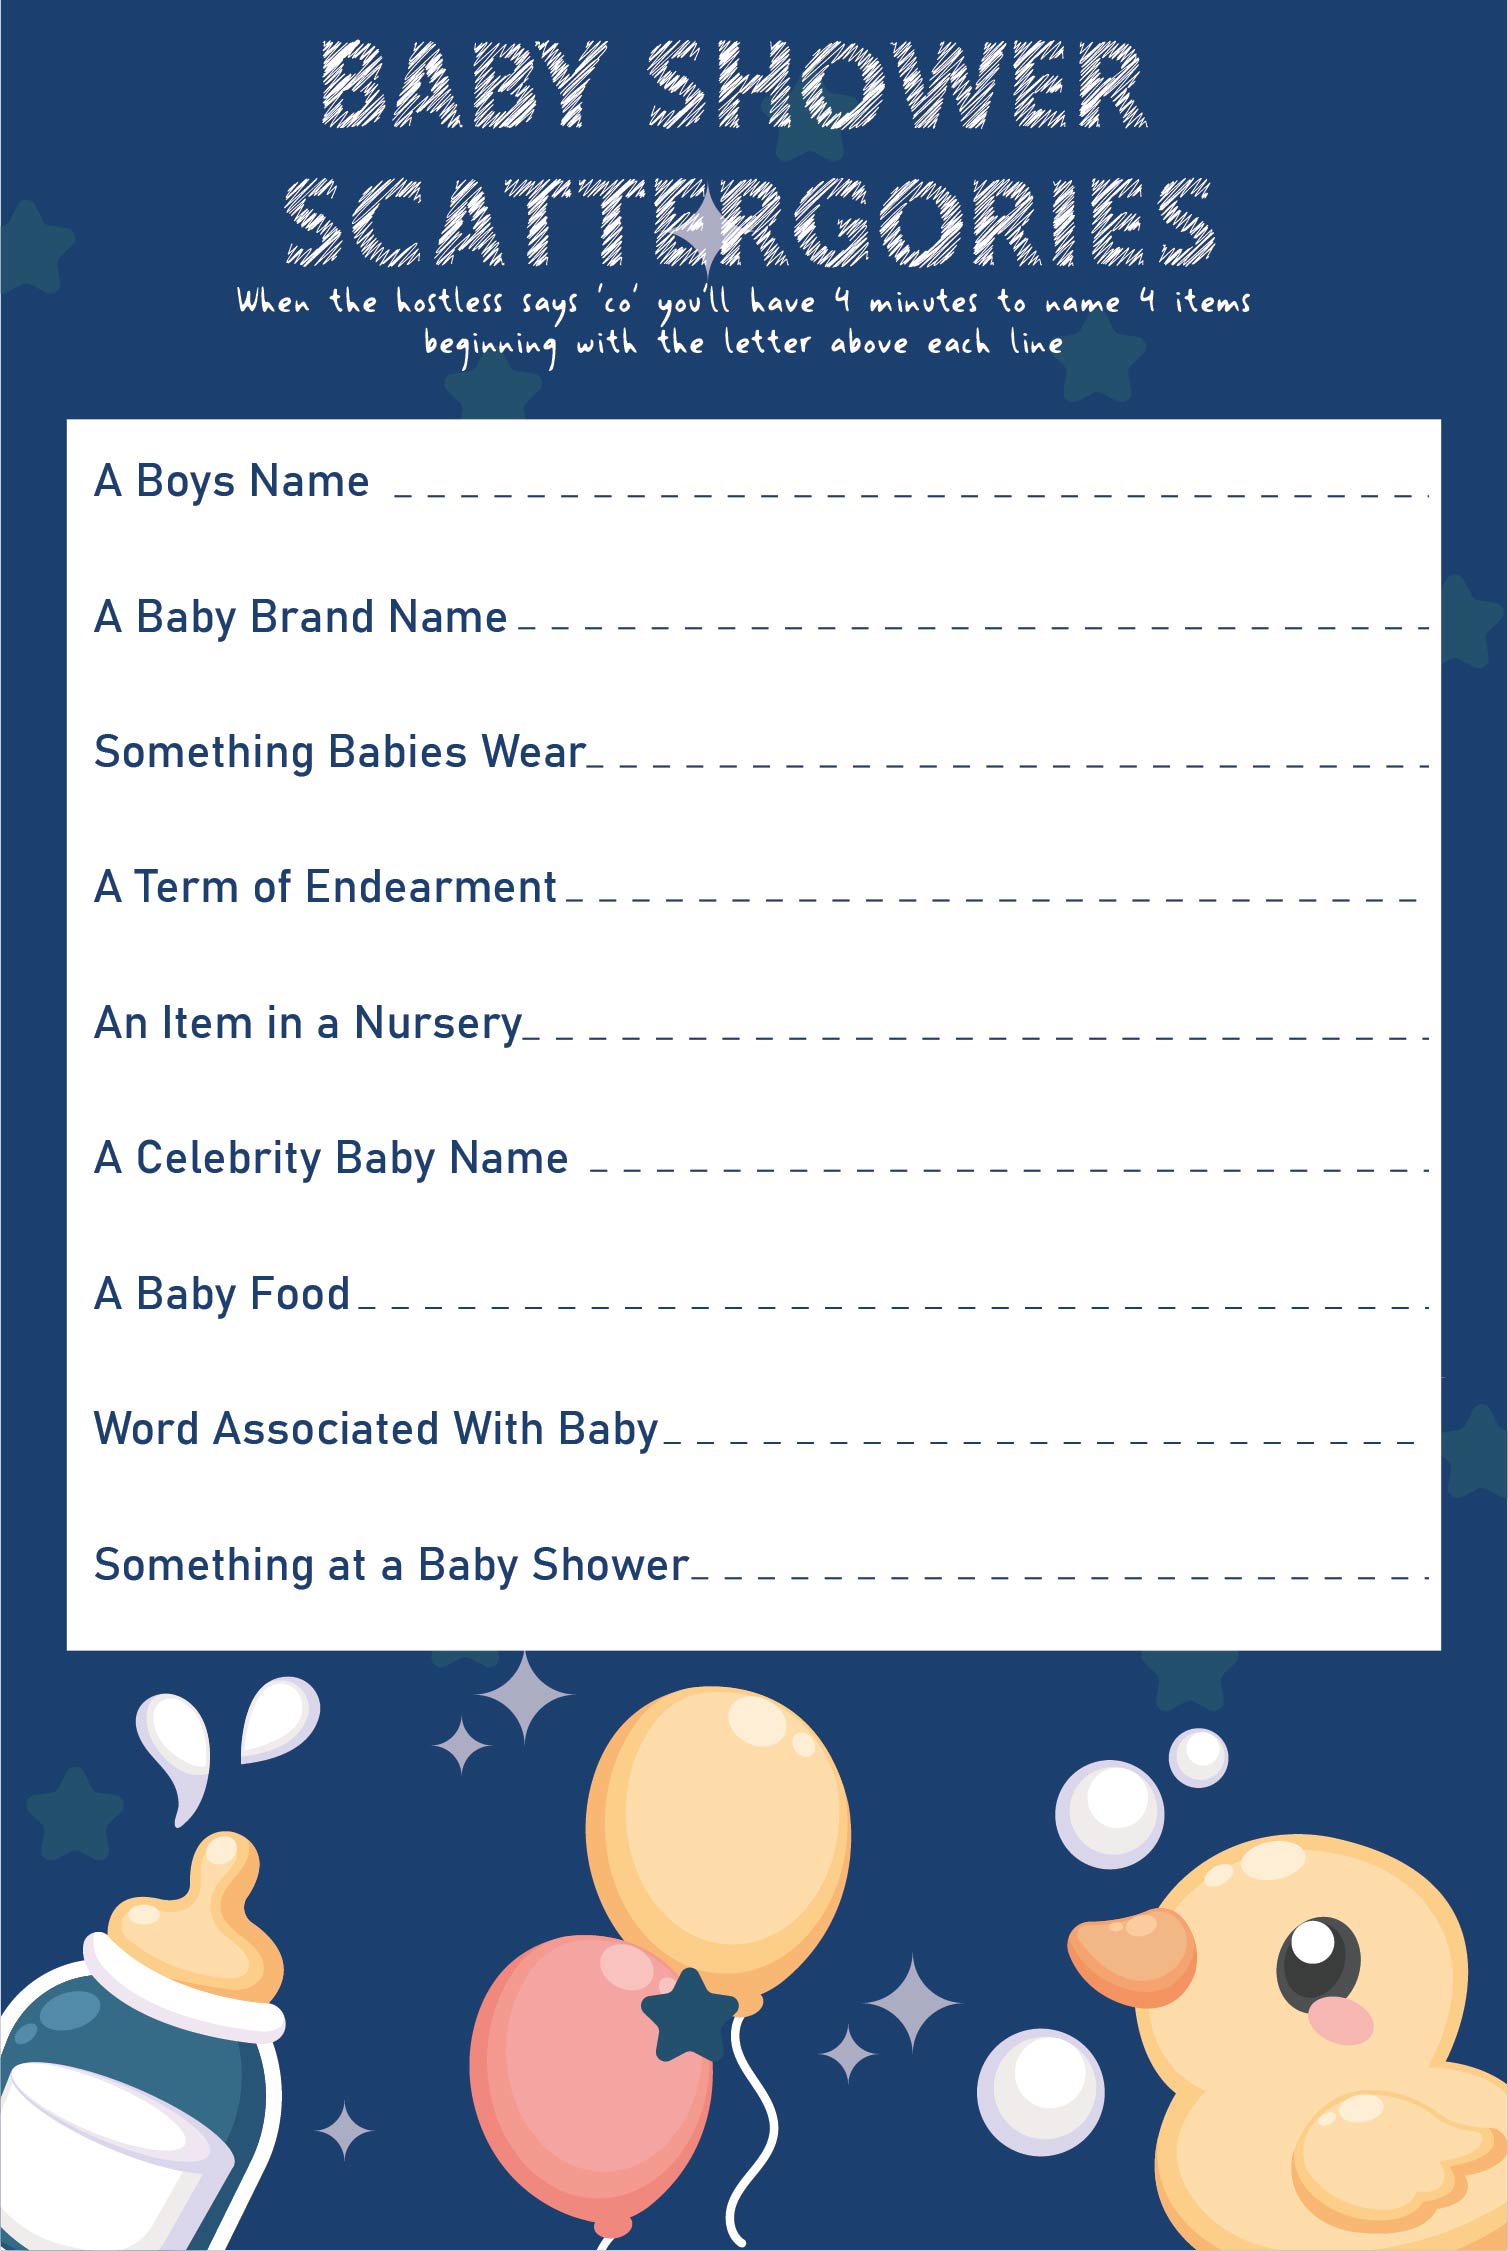 Baby Shower Game Scattergories